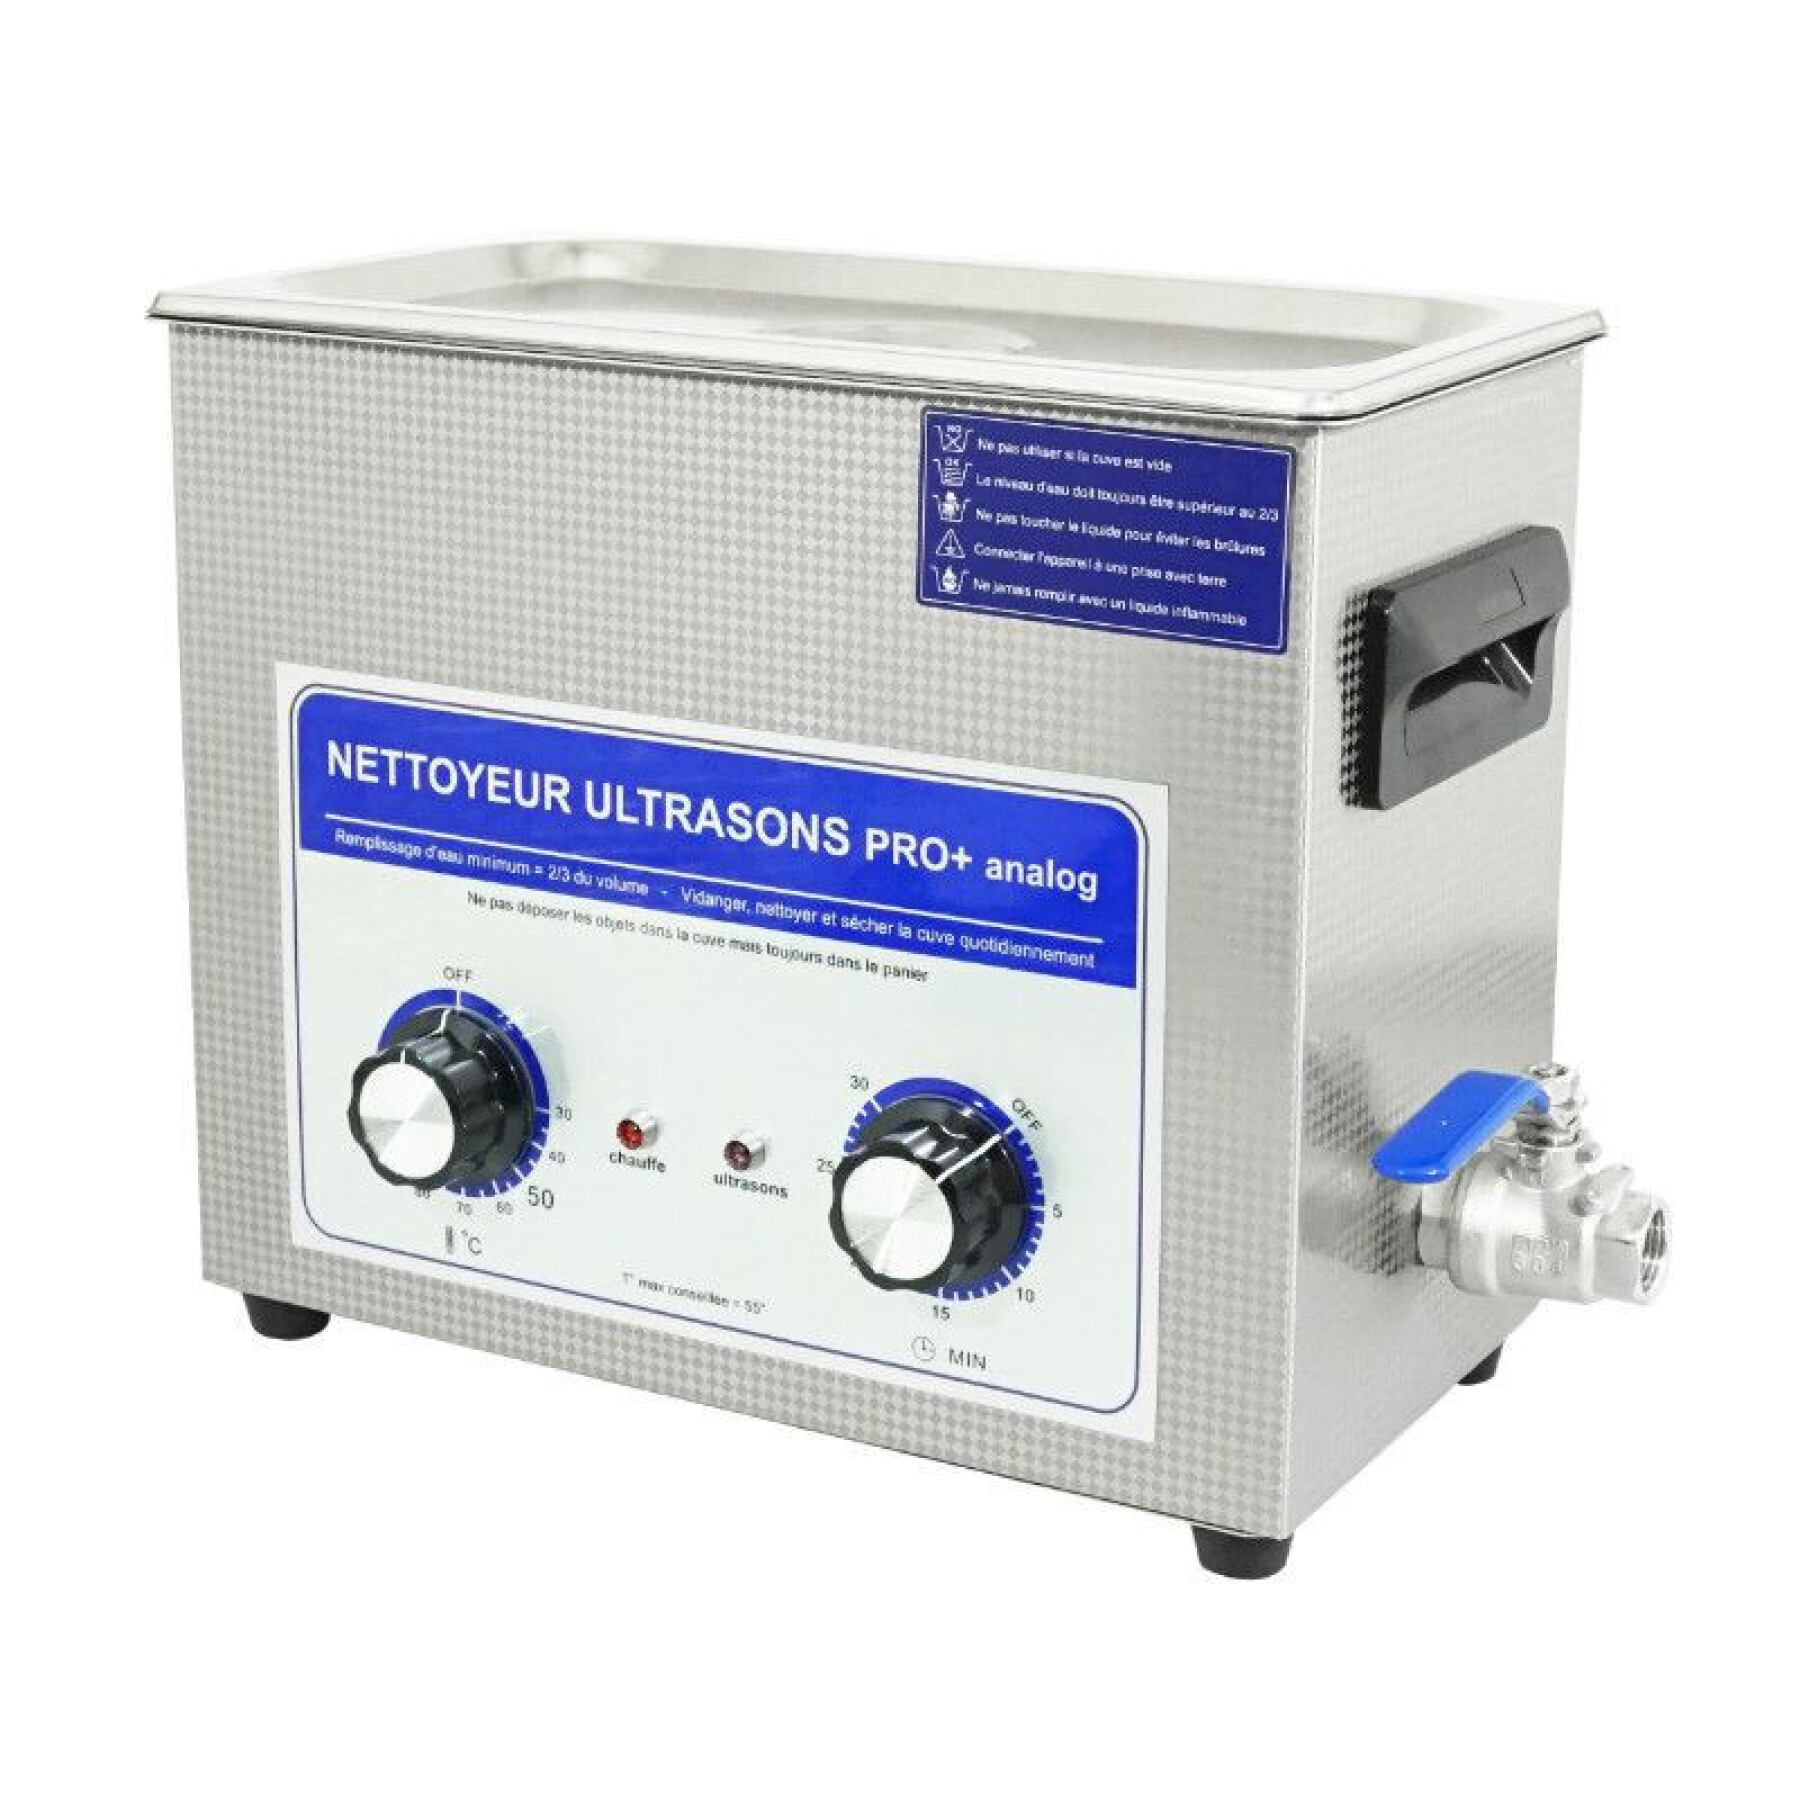 Nettoyeur-bac ultrasons professionnel analogique avec vanne de vidange P2R 6 L 180 W